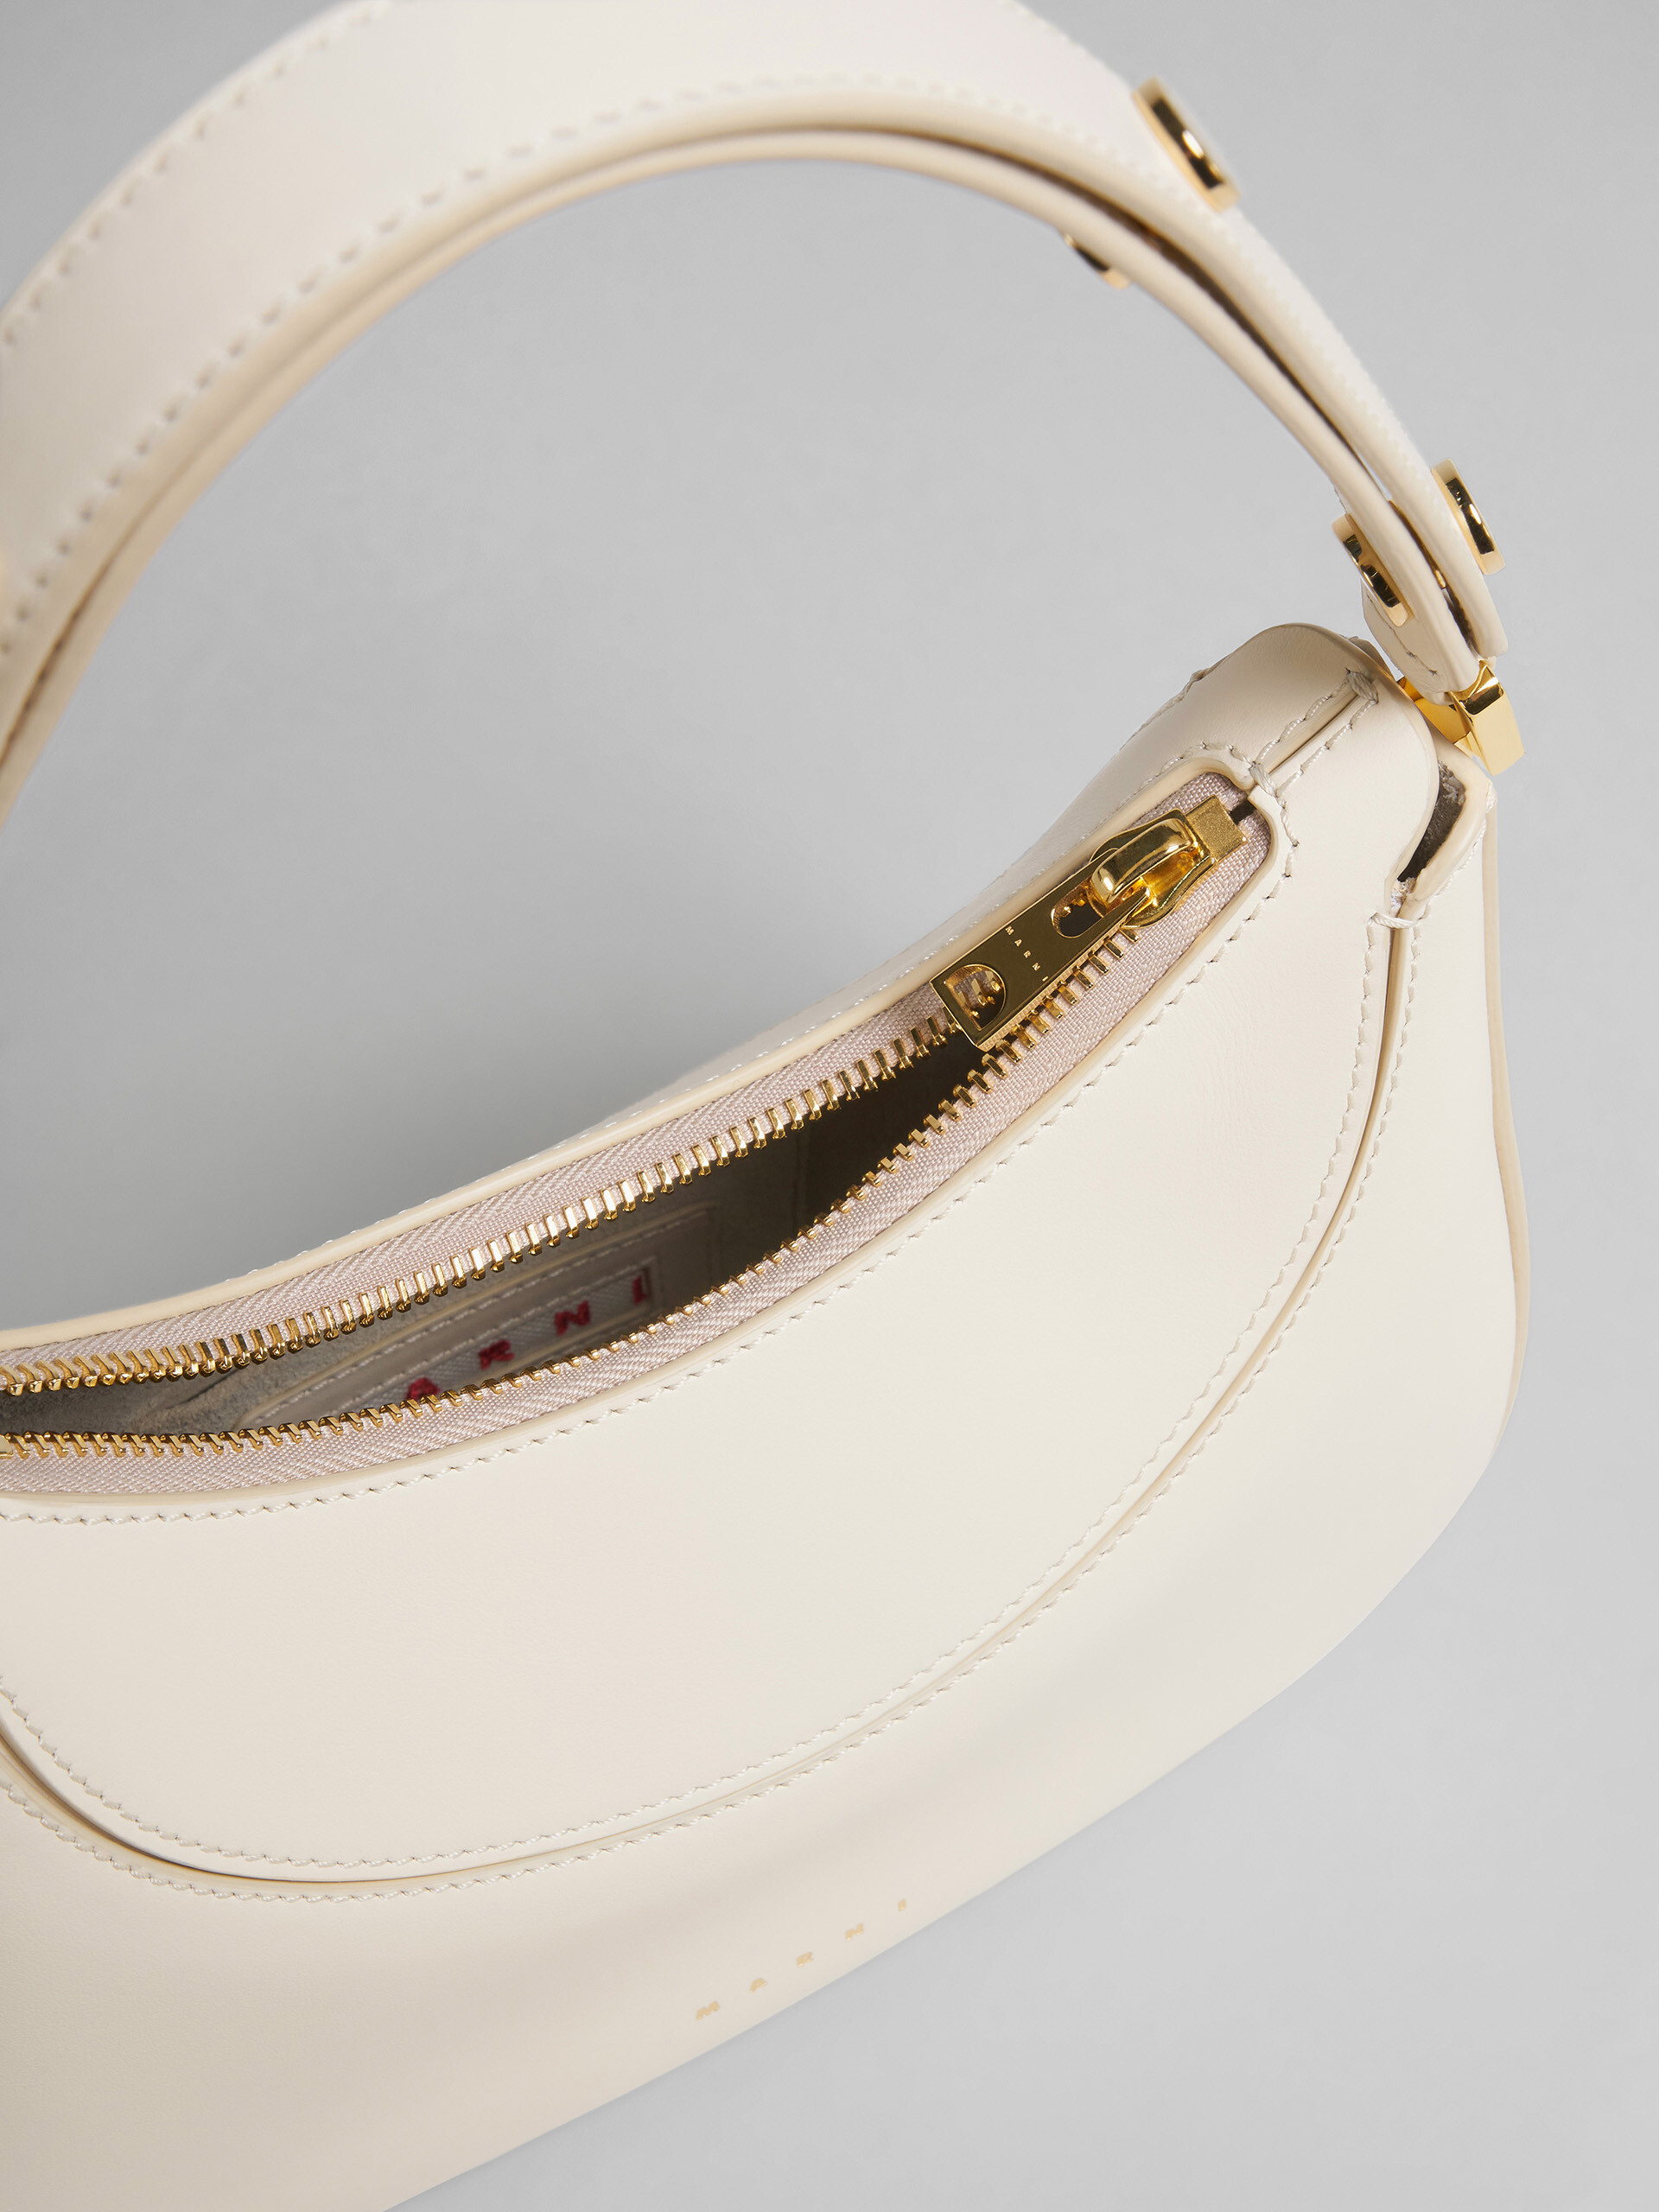 Milano mini bag in white leather - Handbag - Image 4